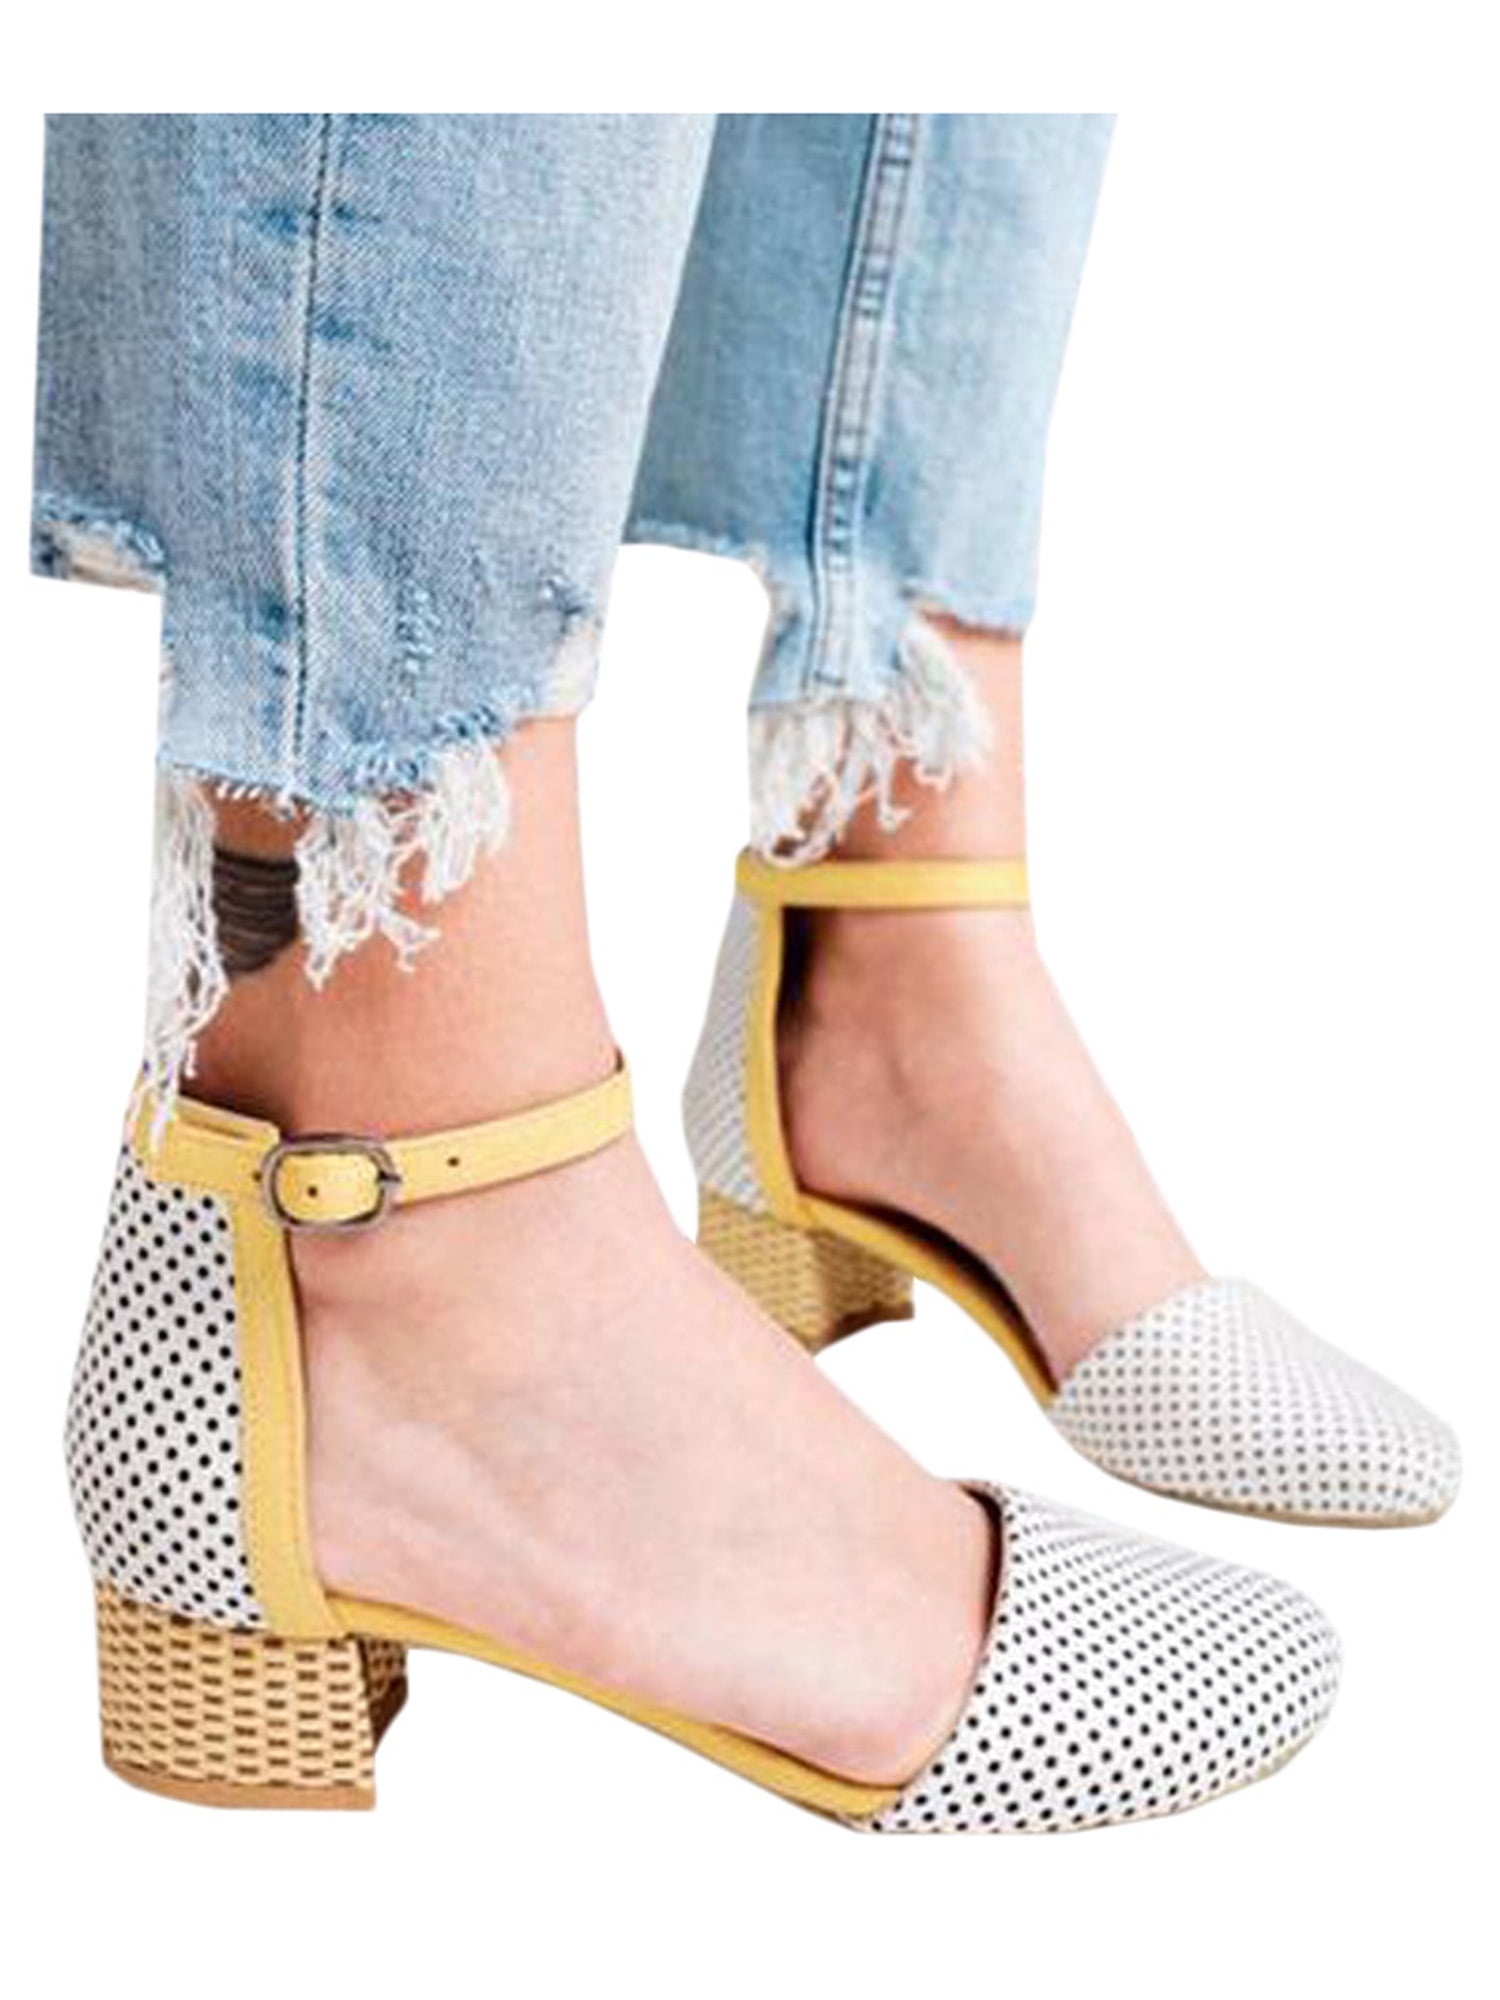 size 1 block heels